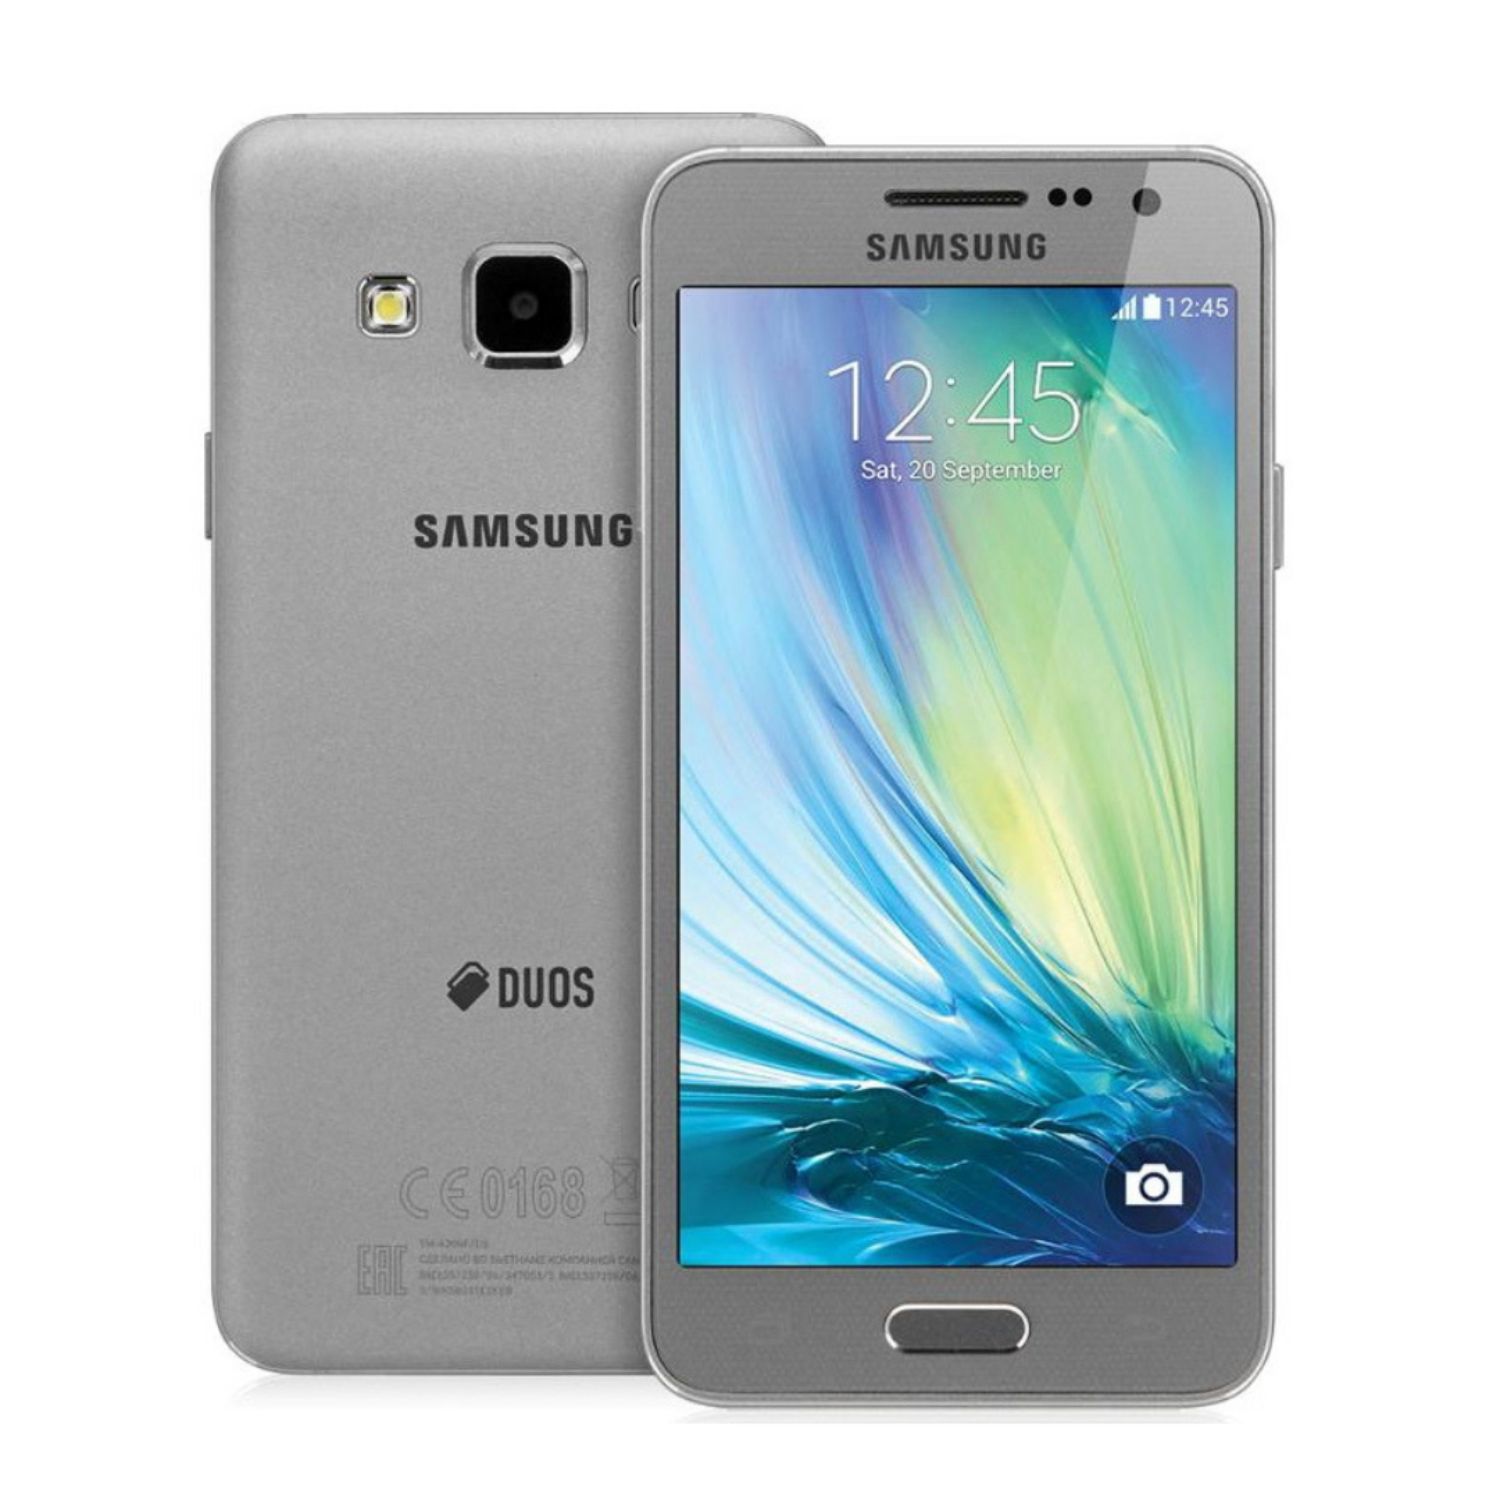 Samsung galaxy gold 3. Samsung Galaxy a3. Samsung a300 Galaxy a3. Samsung a5 2014. Samsung a3 2015.